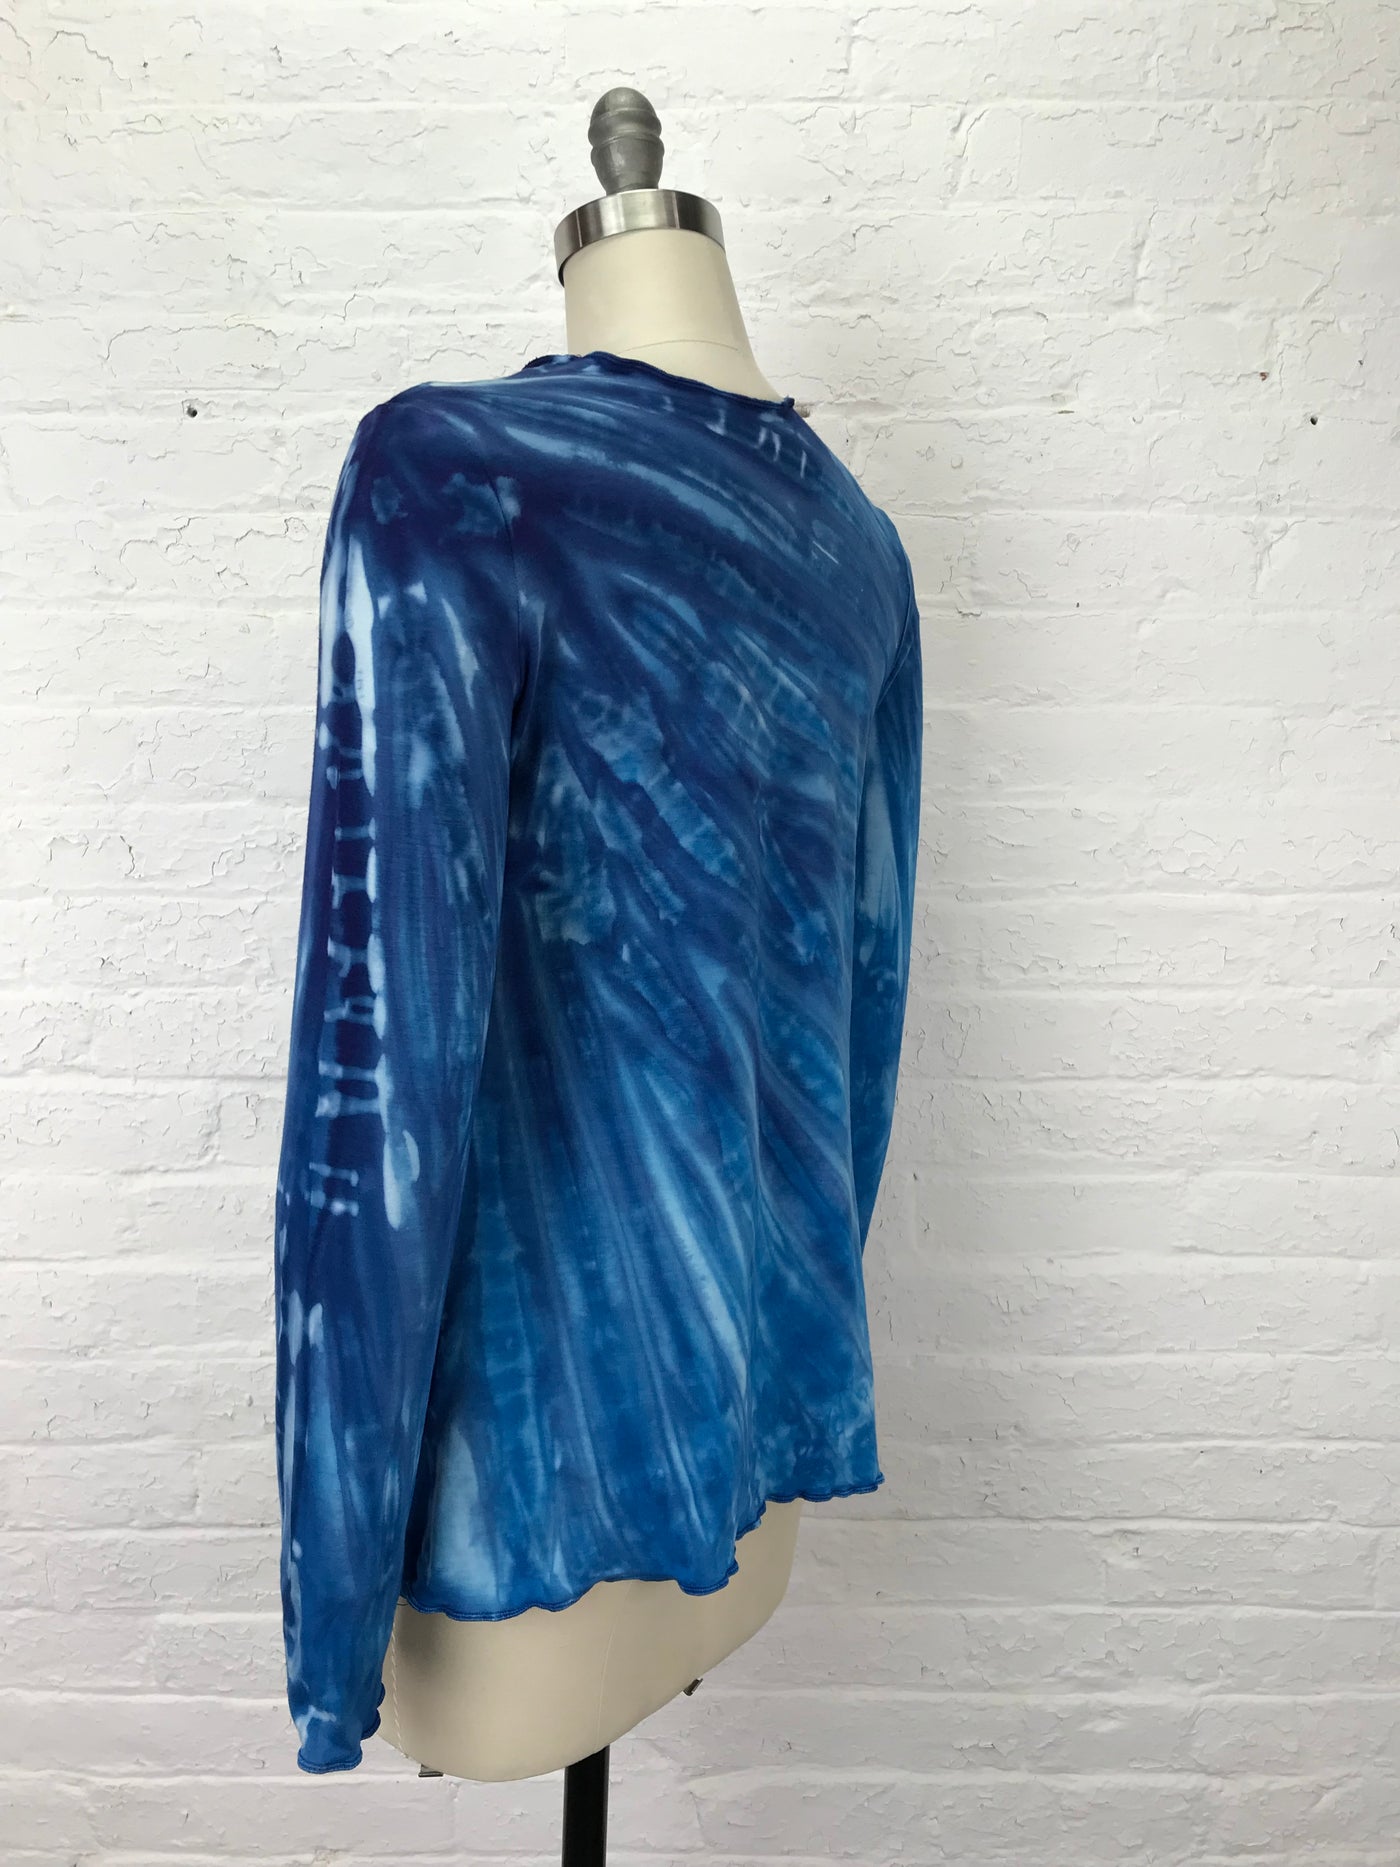 Jane Long Sleeve Top in Cobalt Shadow